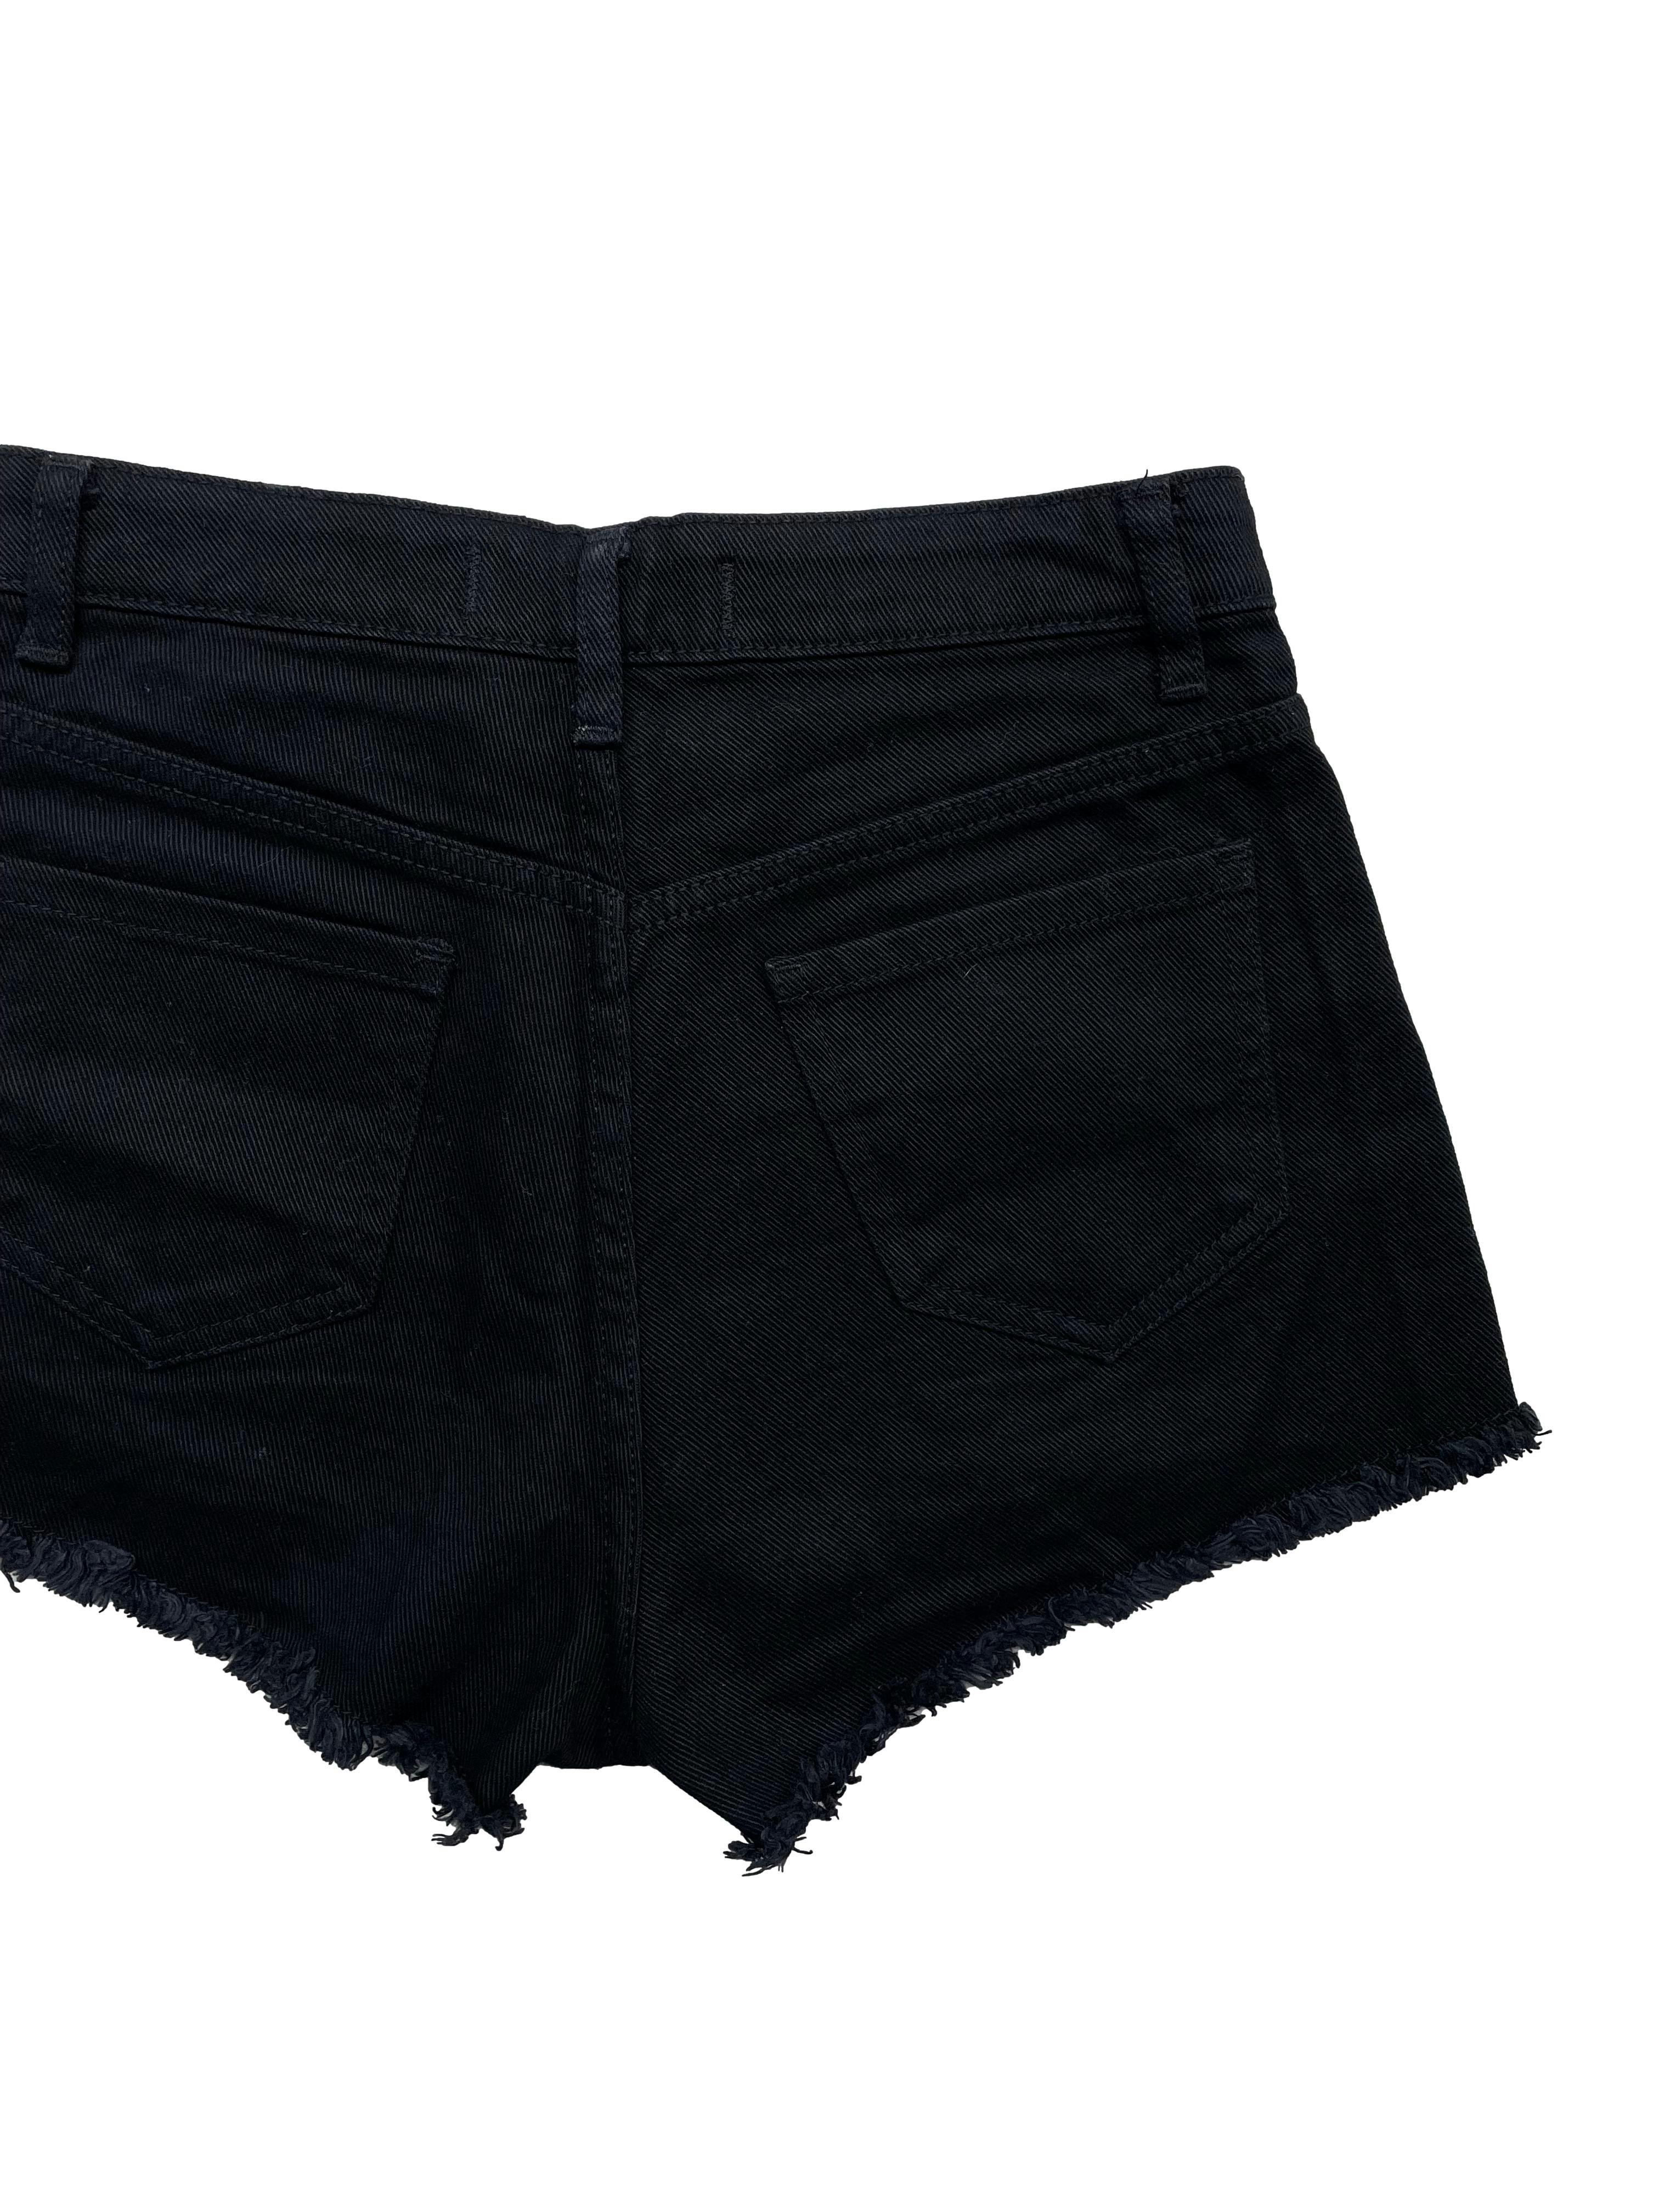 Short jean negro Tally Weijl con bolsillos delanteros y posteriores, basta desflecada. Cintura: 64cm, Tiro 26cm Largo: 30cm. Nuevo